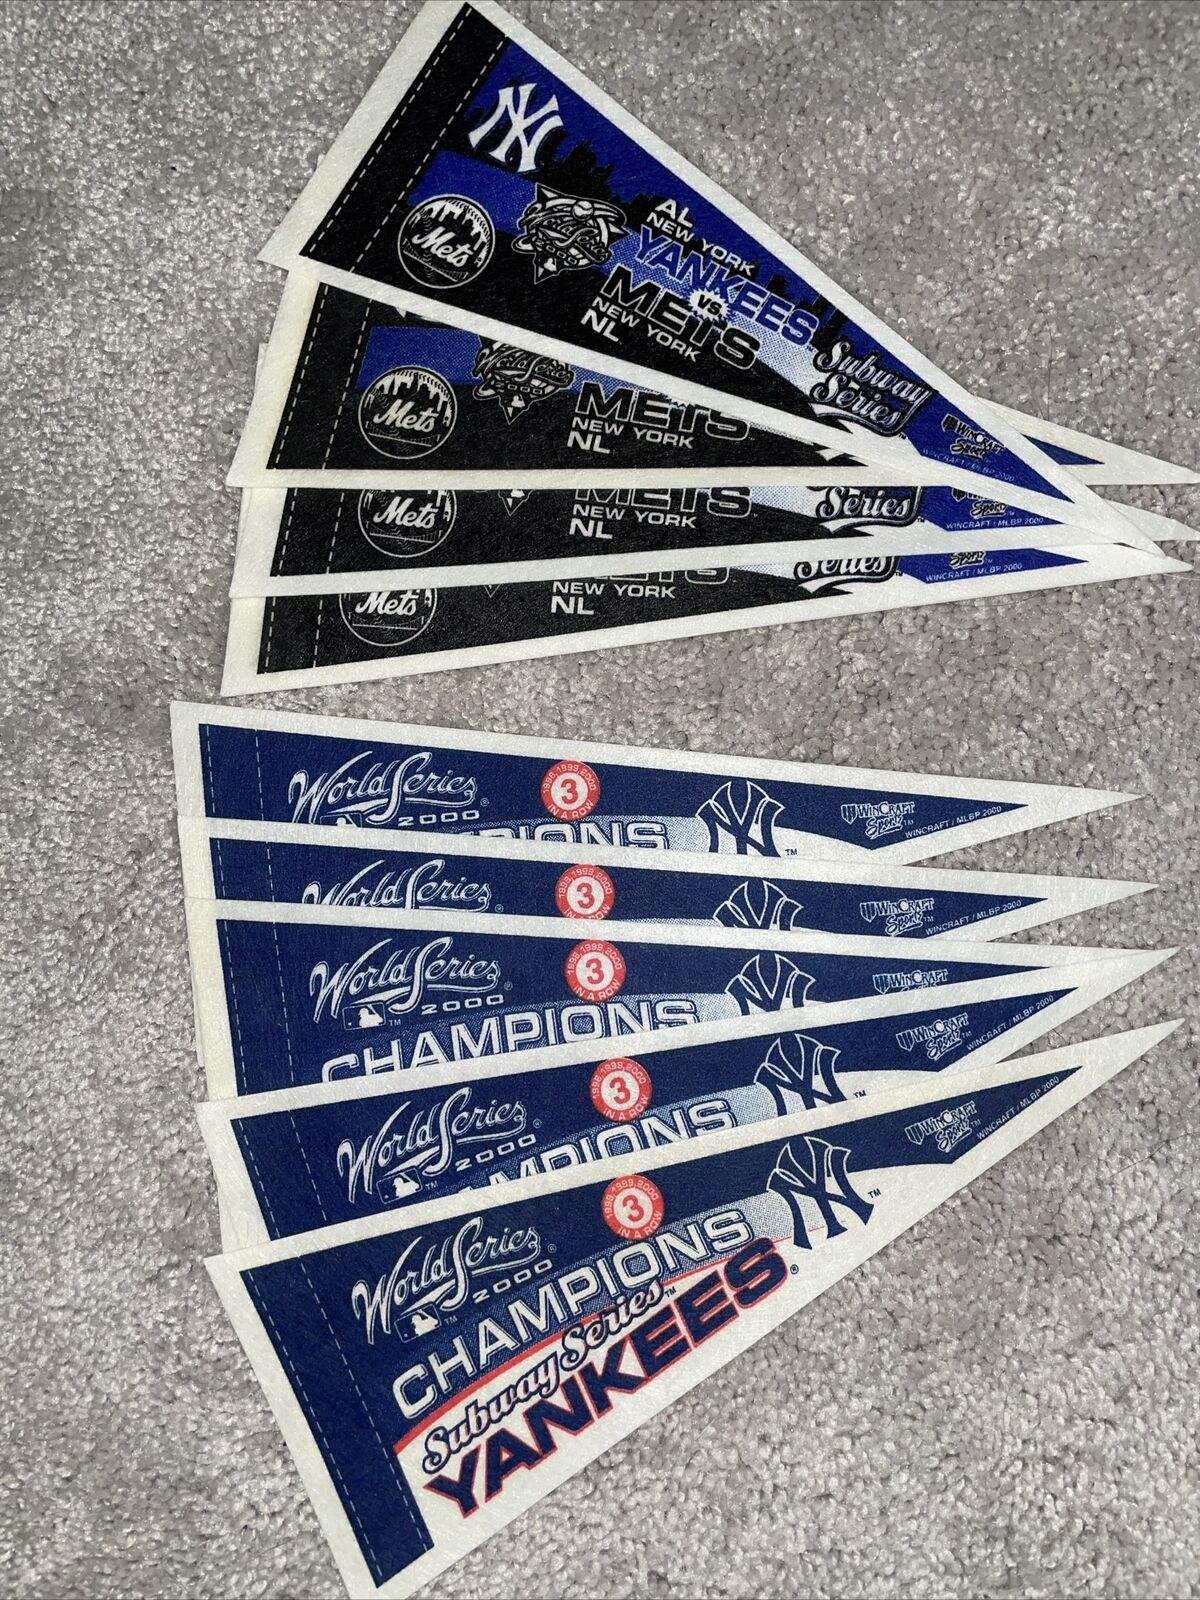 Ysnks/Mets Subway Series Mini pennants lot, 4x10 nine in all